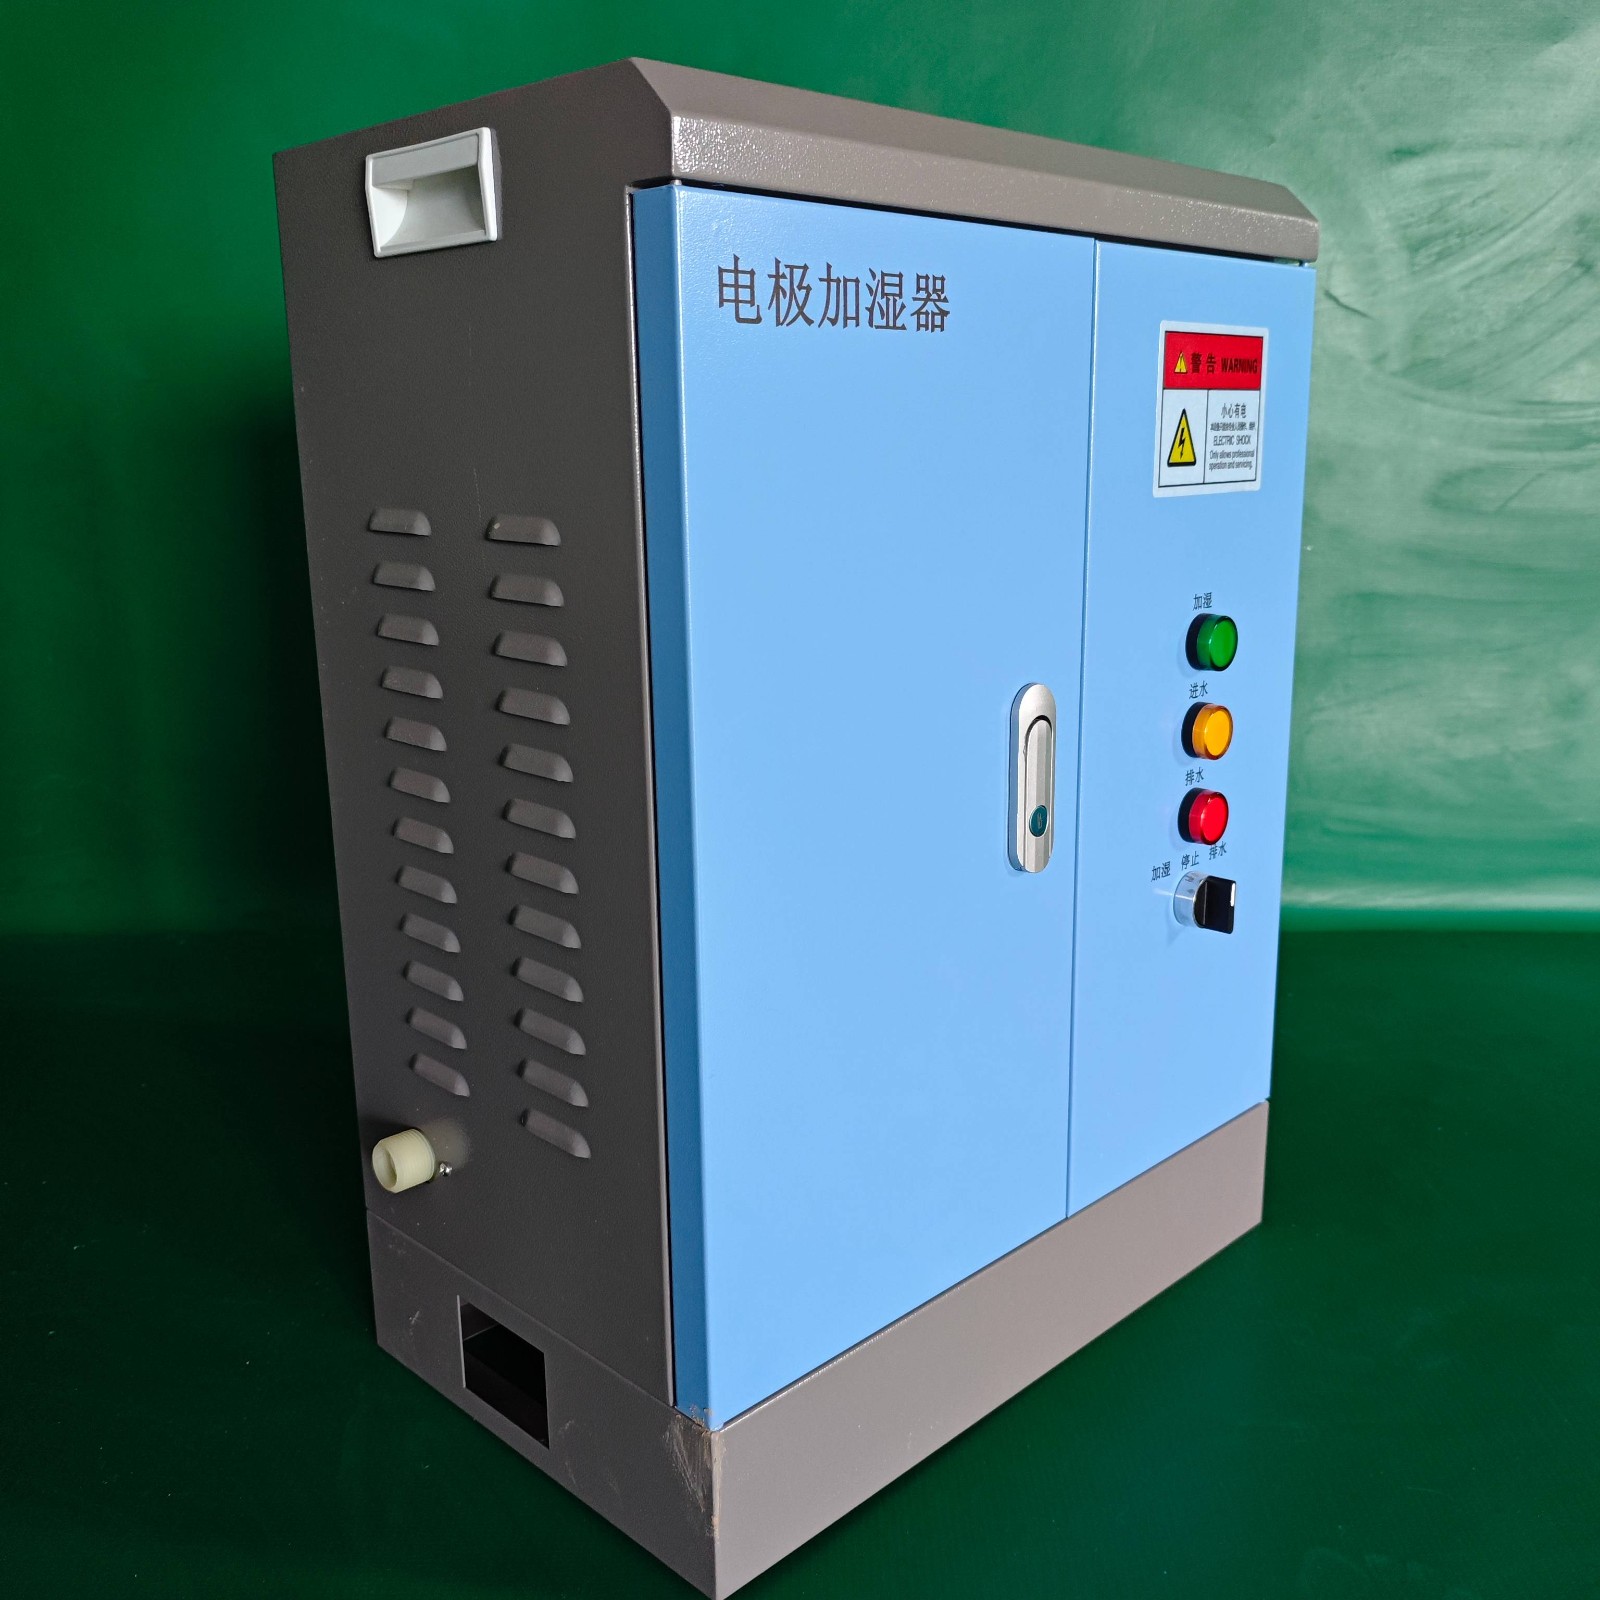 睿达32公斤电极加湿器自动型、组合式空调加湿器配套图2